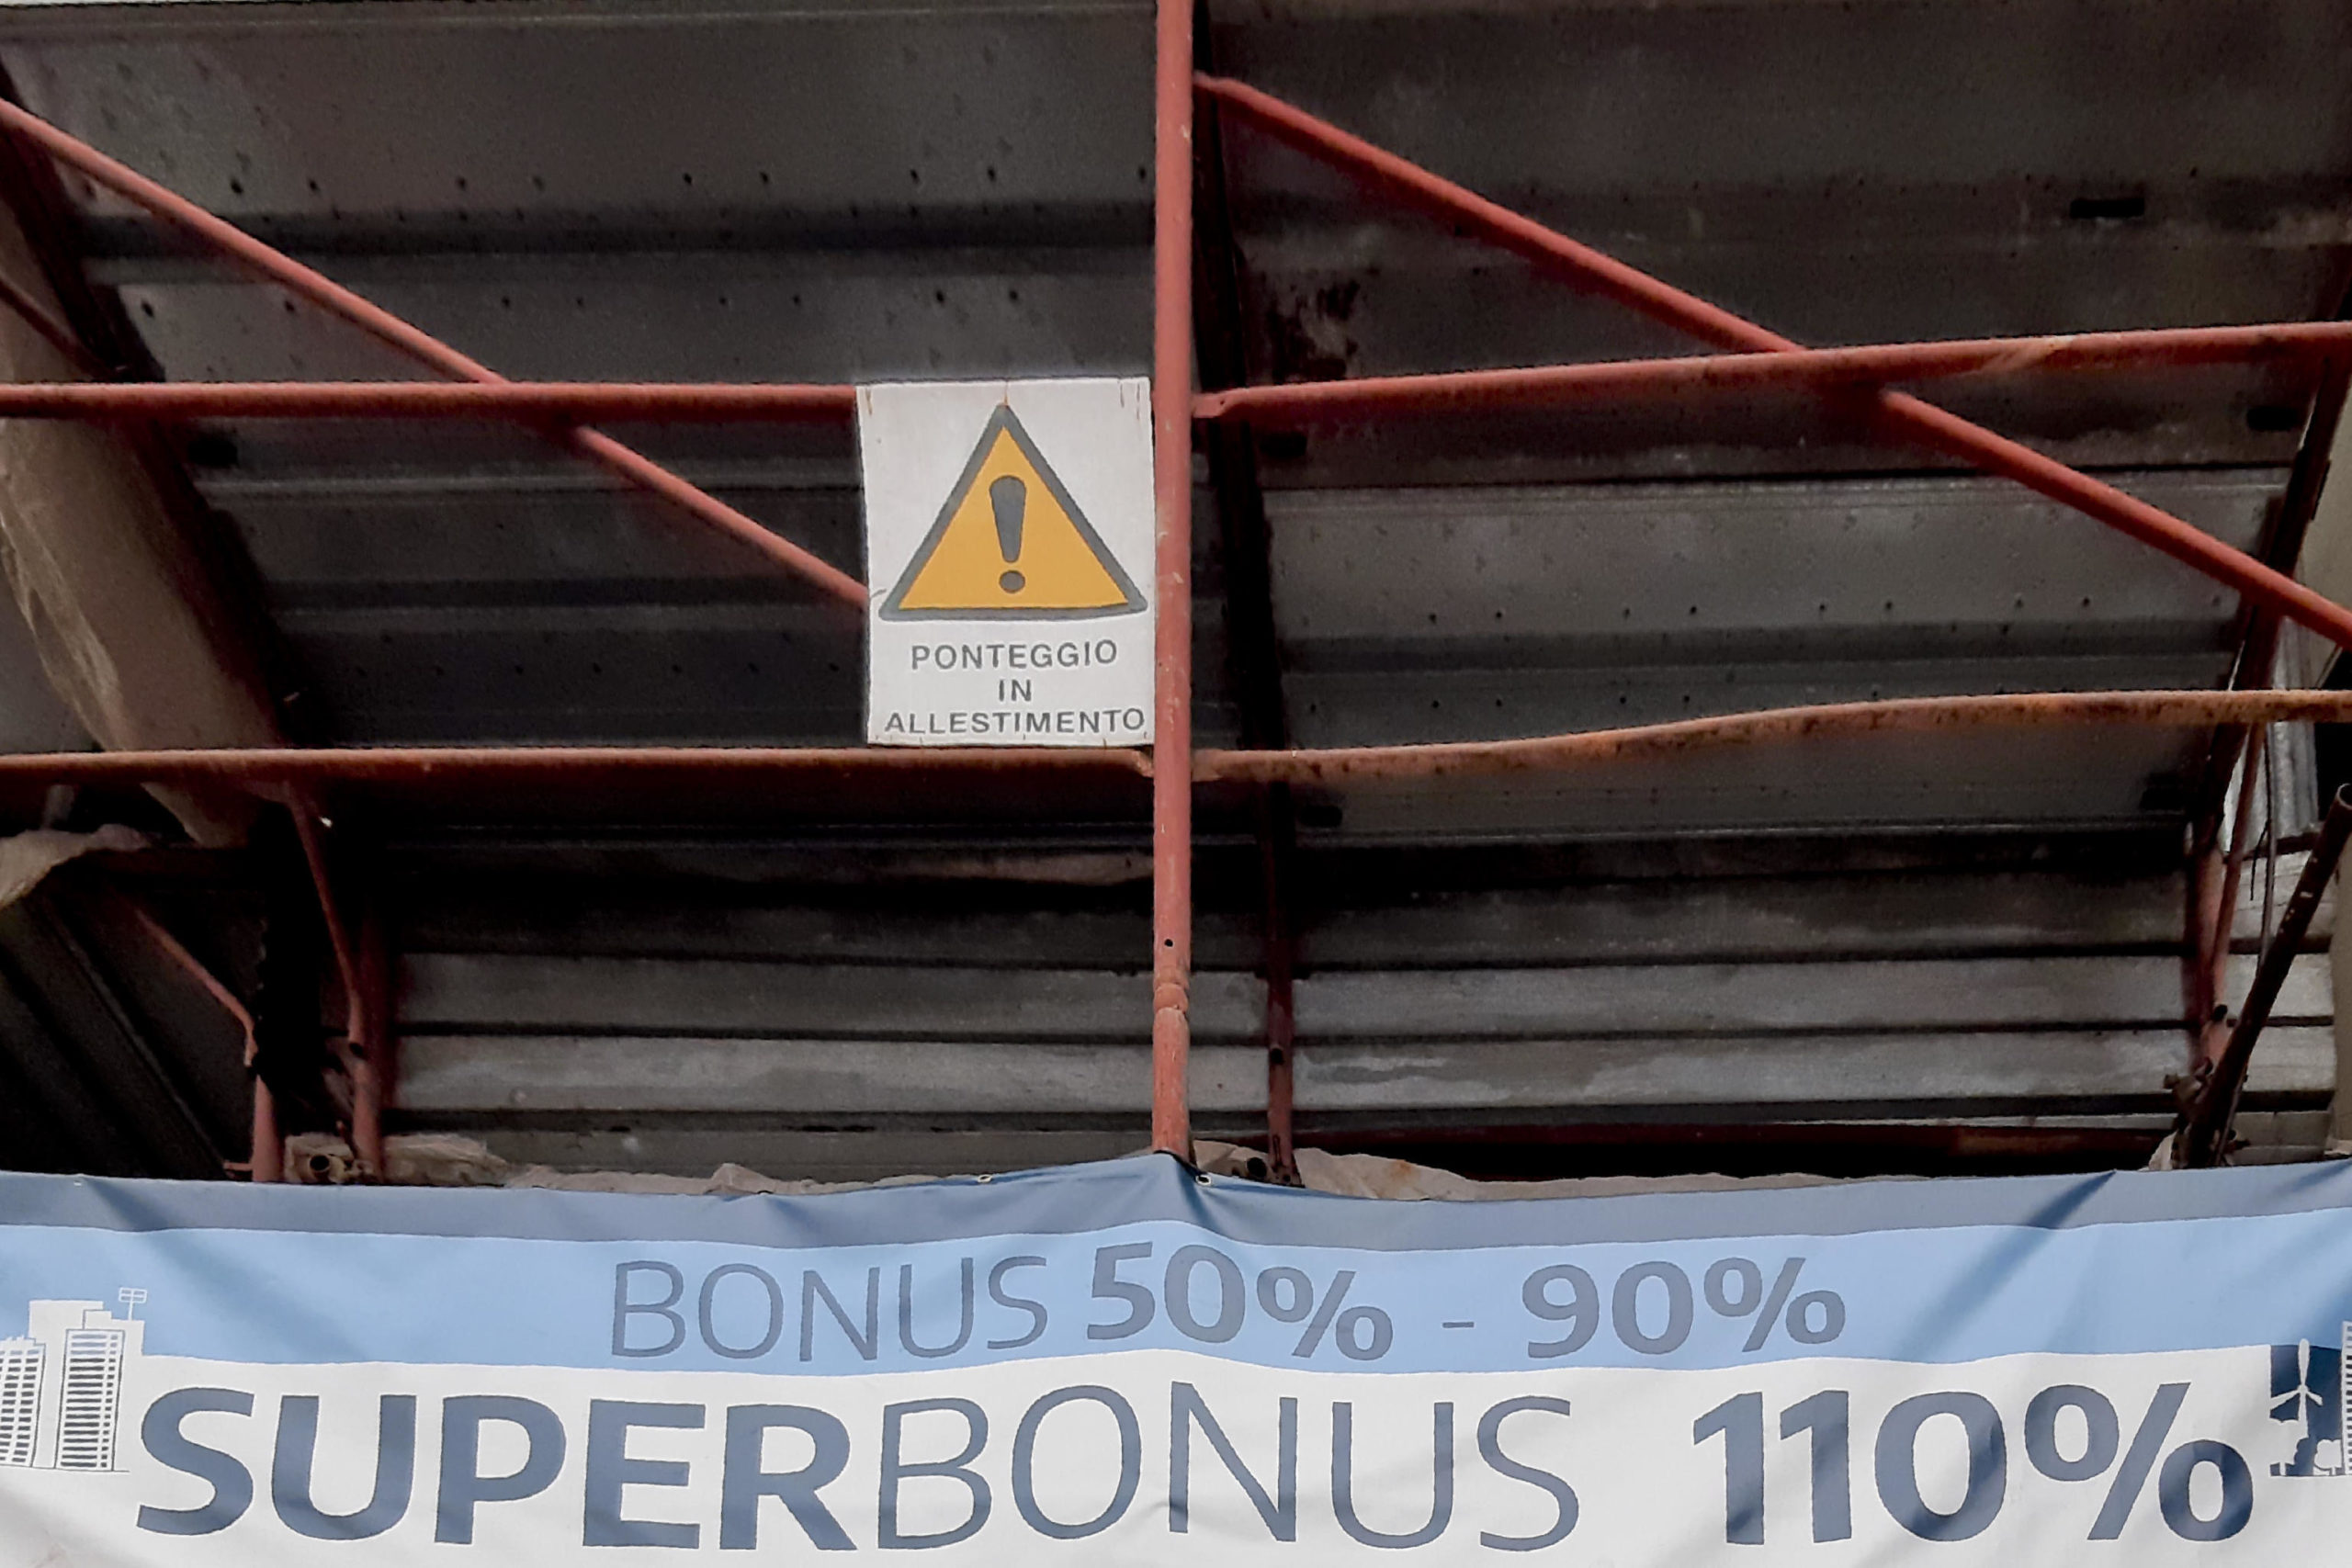 Superbonus, tutte le novità dell’agenzia delle entrate